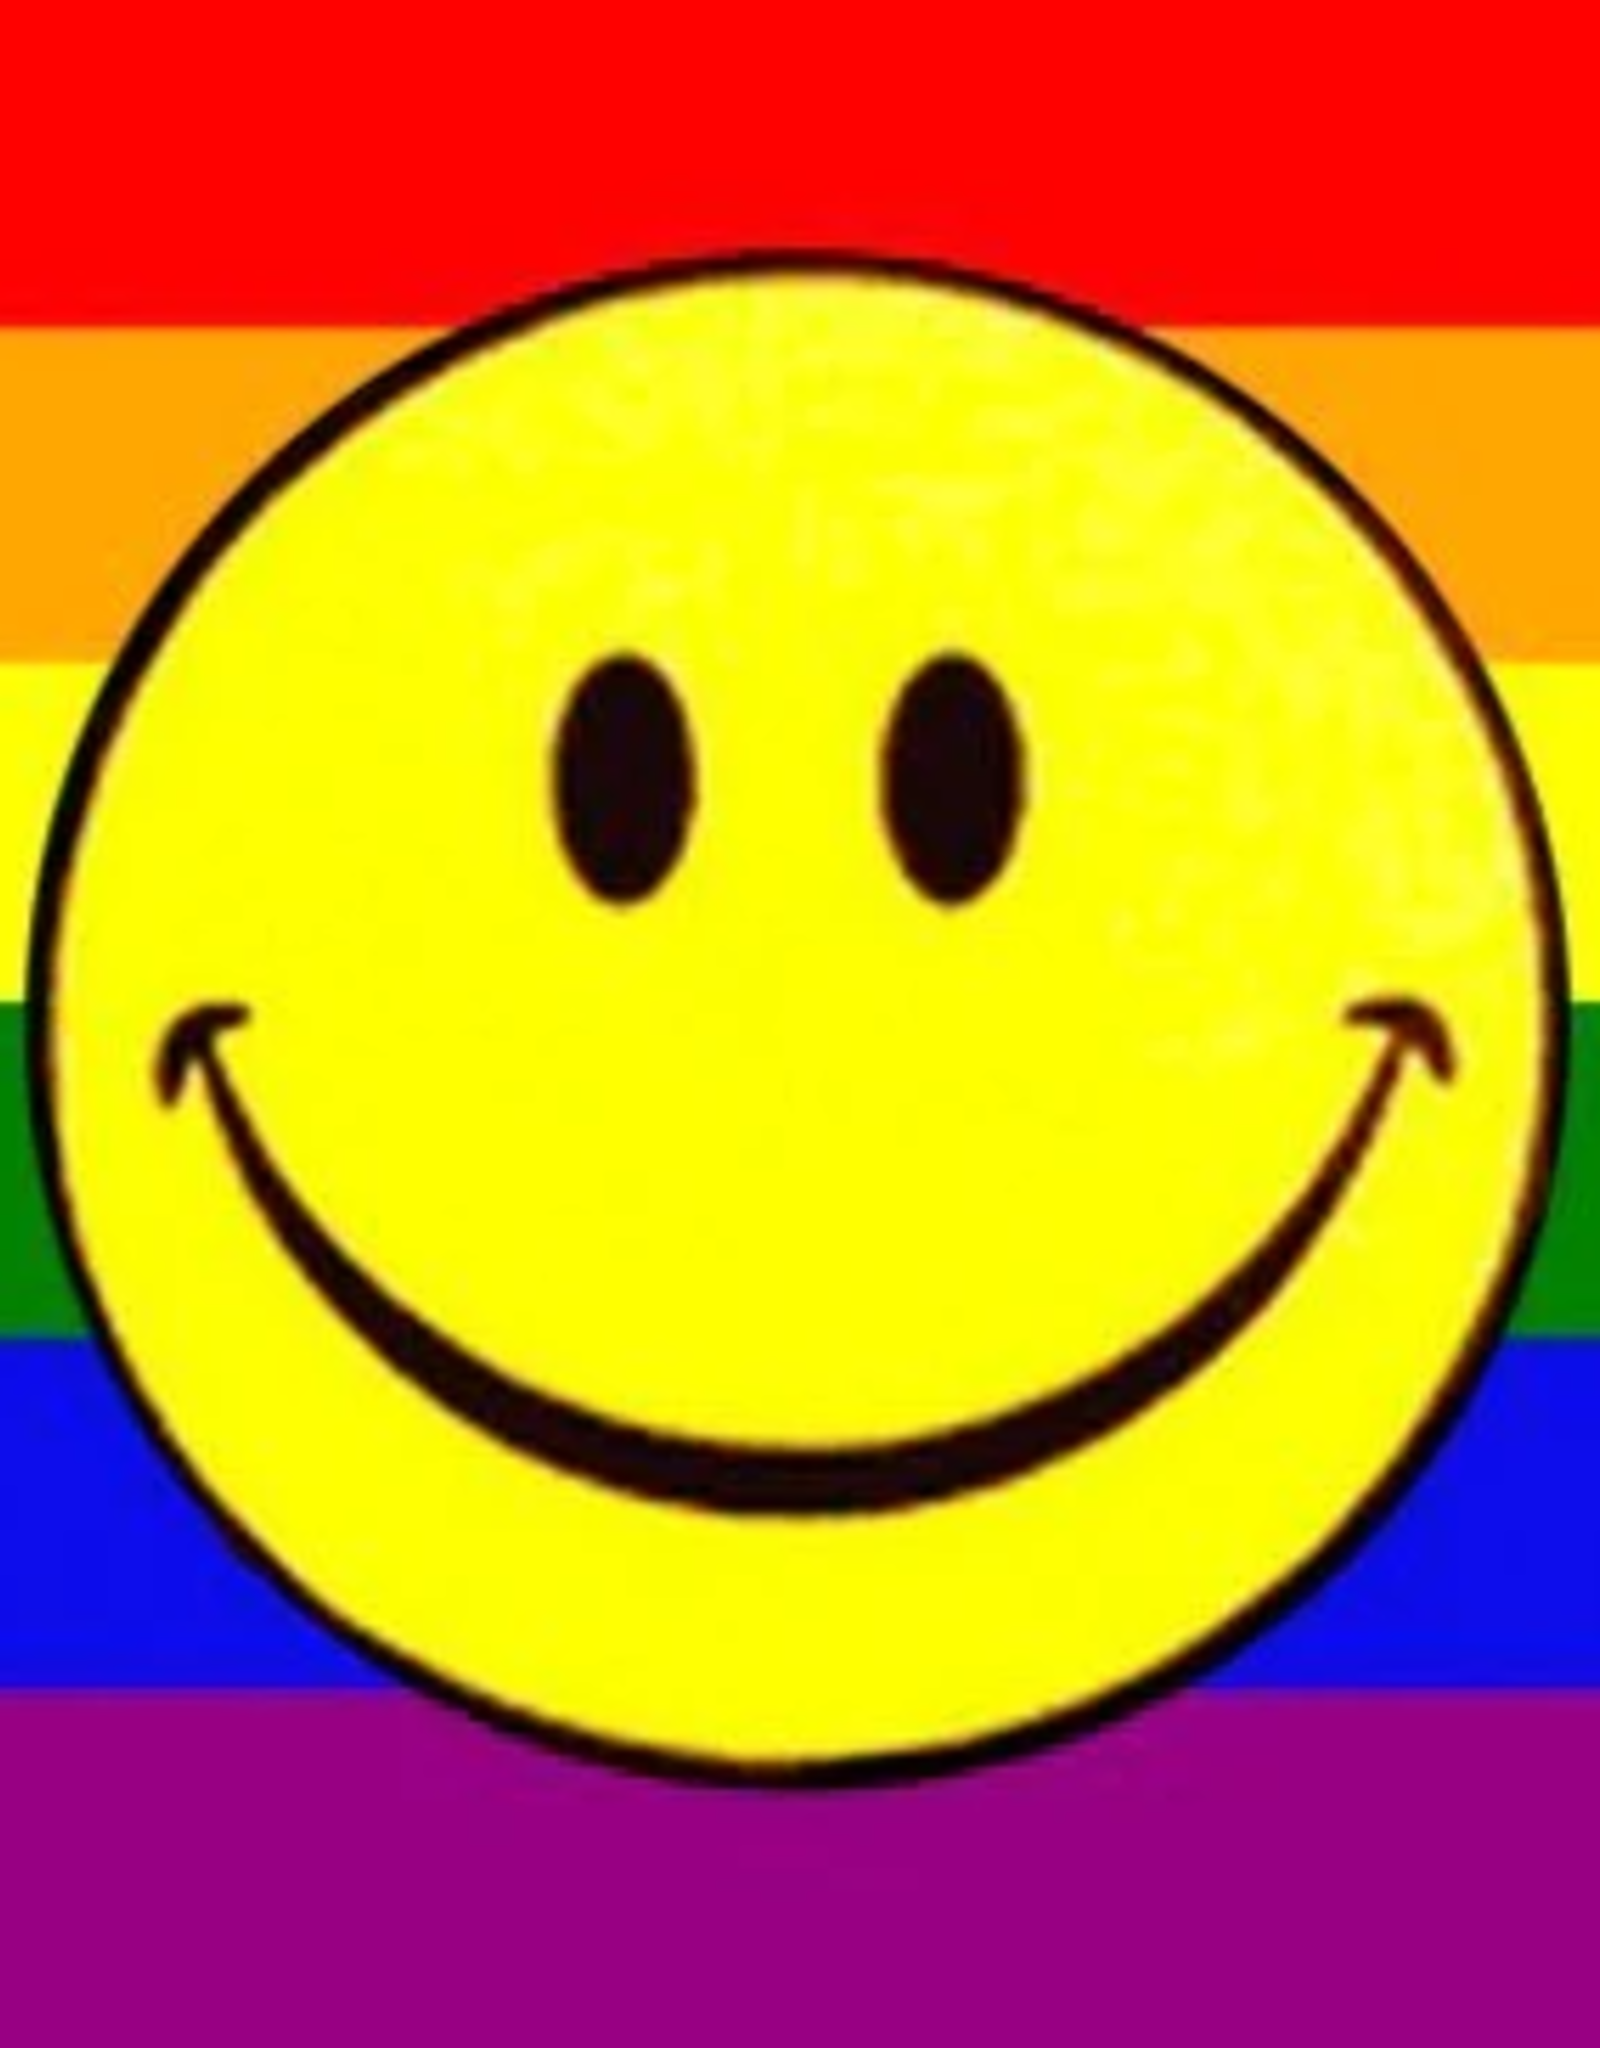 Rainbow Smiley Flag - 3' x 5'